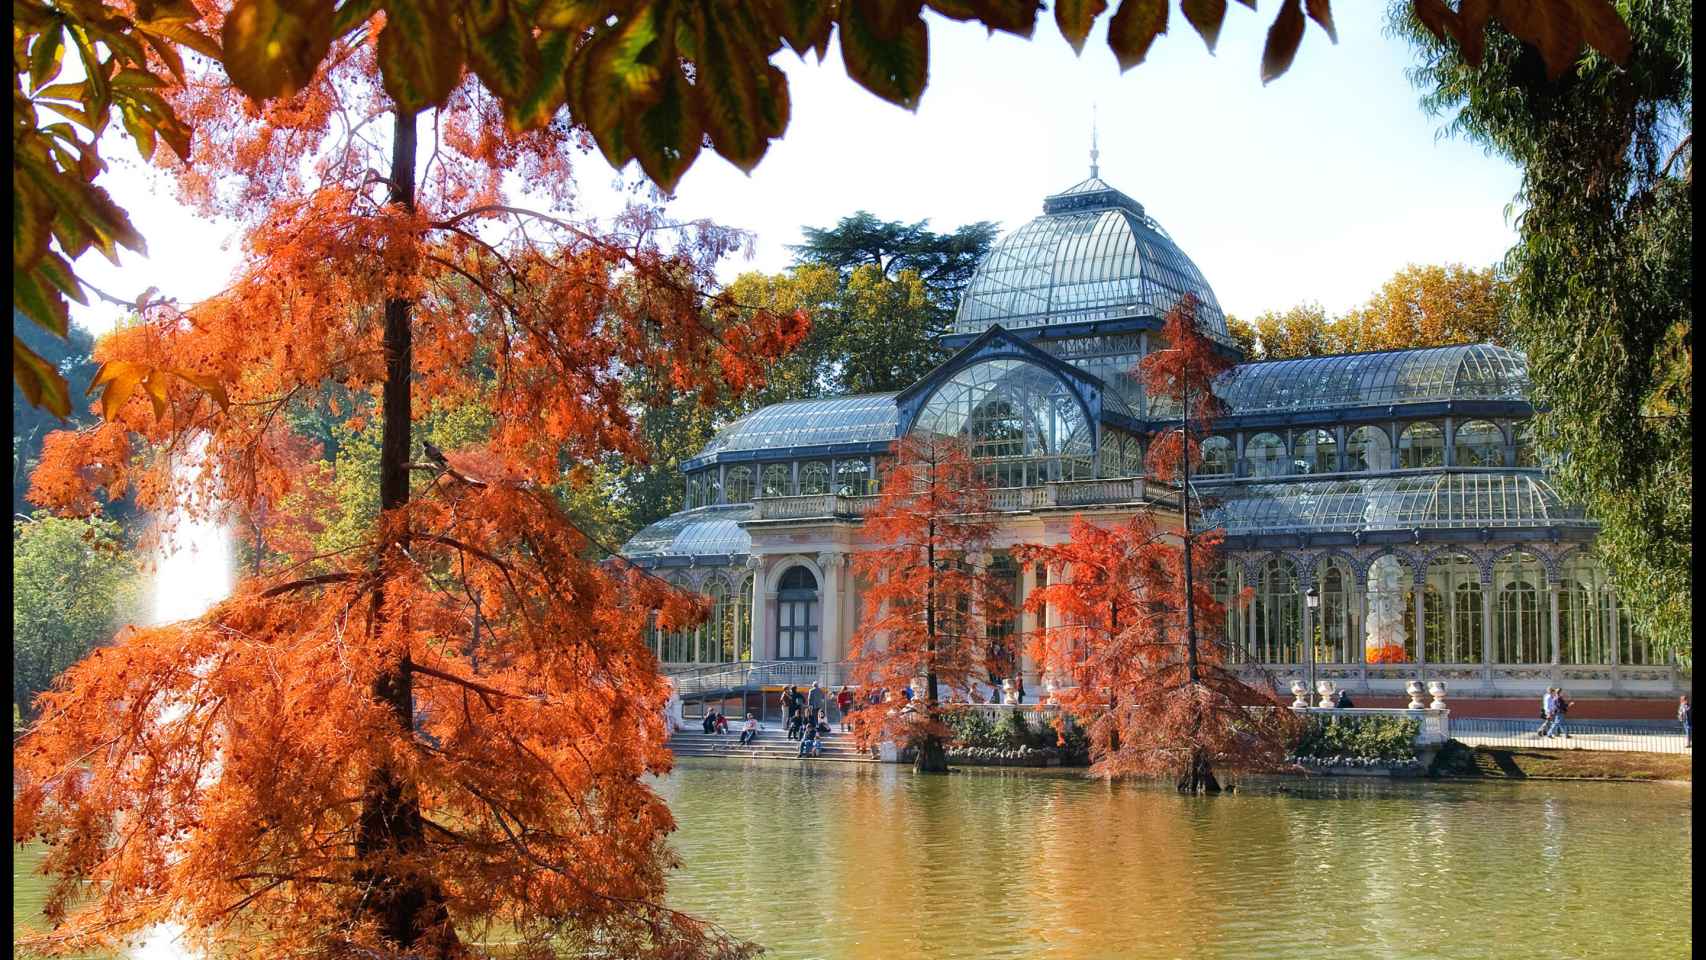 Palacio de Cristal en el parque de El Retiro (Madrid).